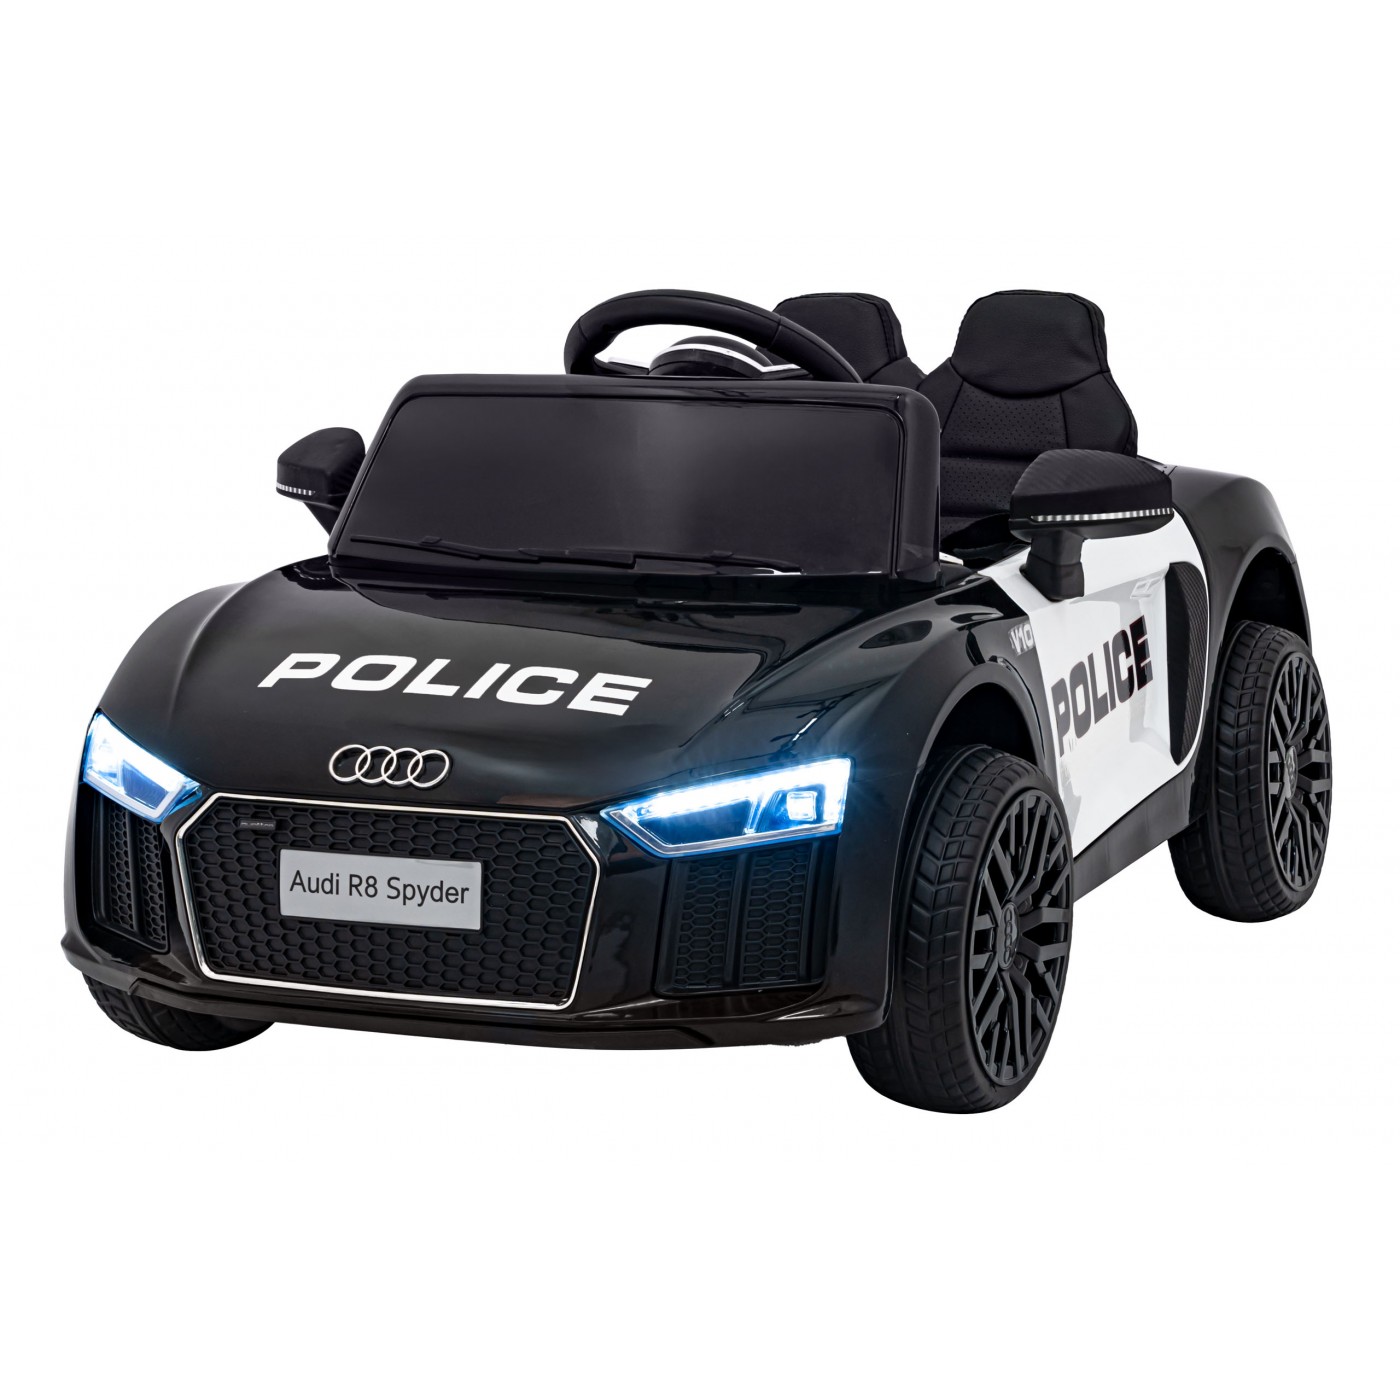 mamido Detské elektrické autíčko Audi R8 Spyder polícia